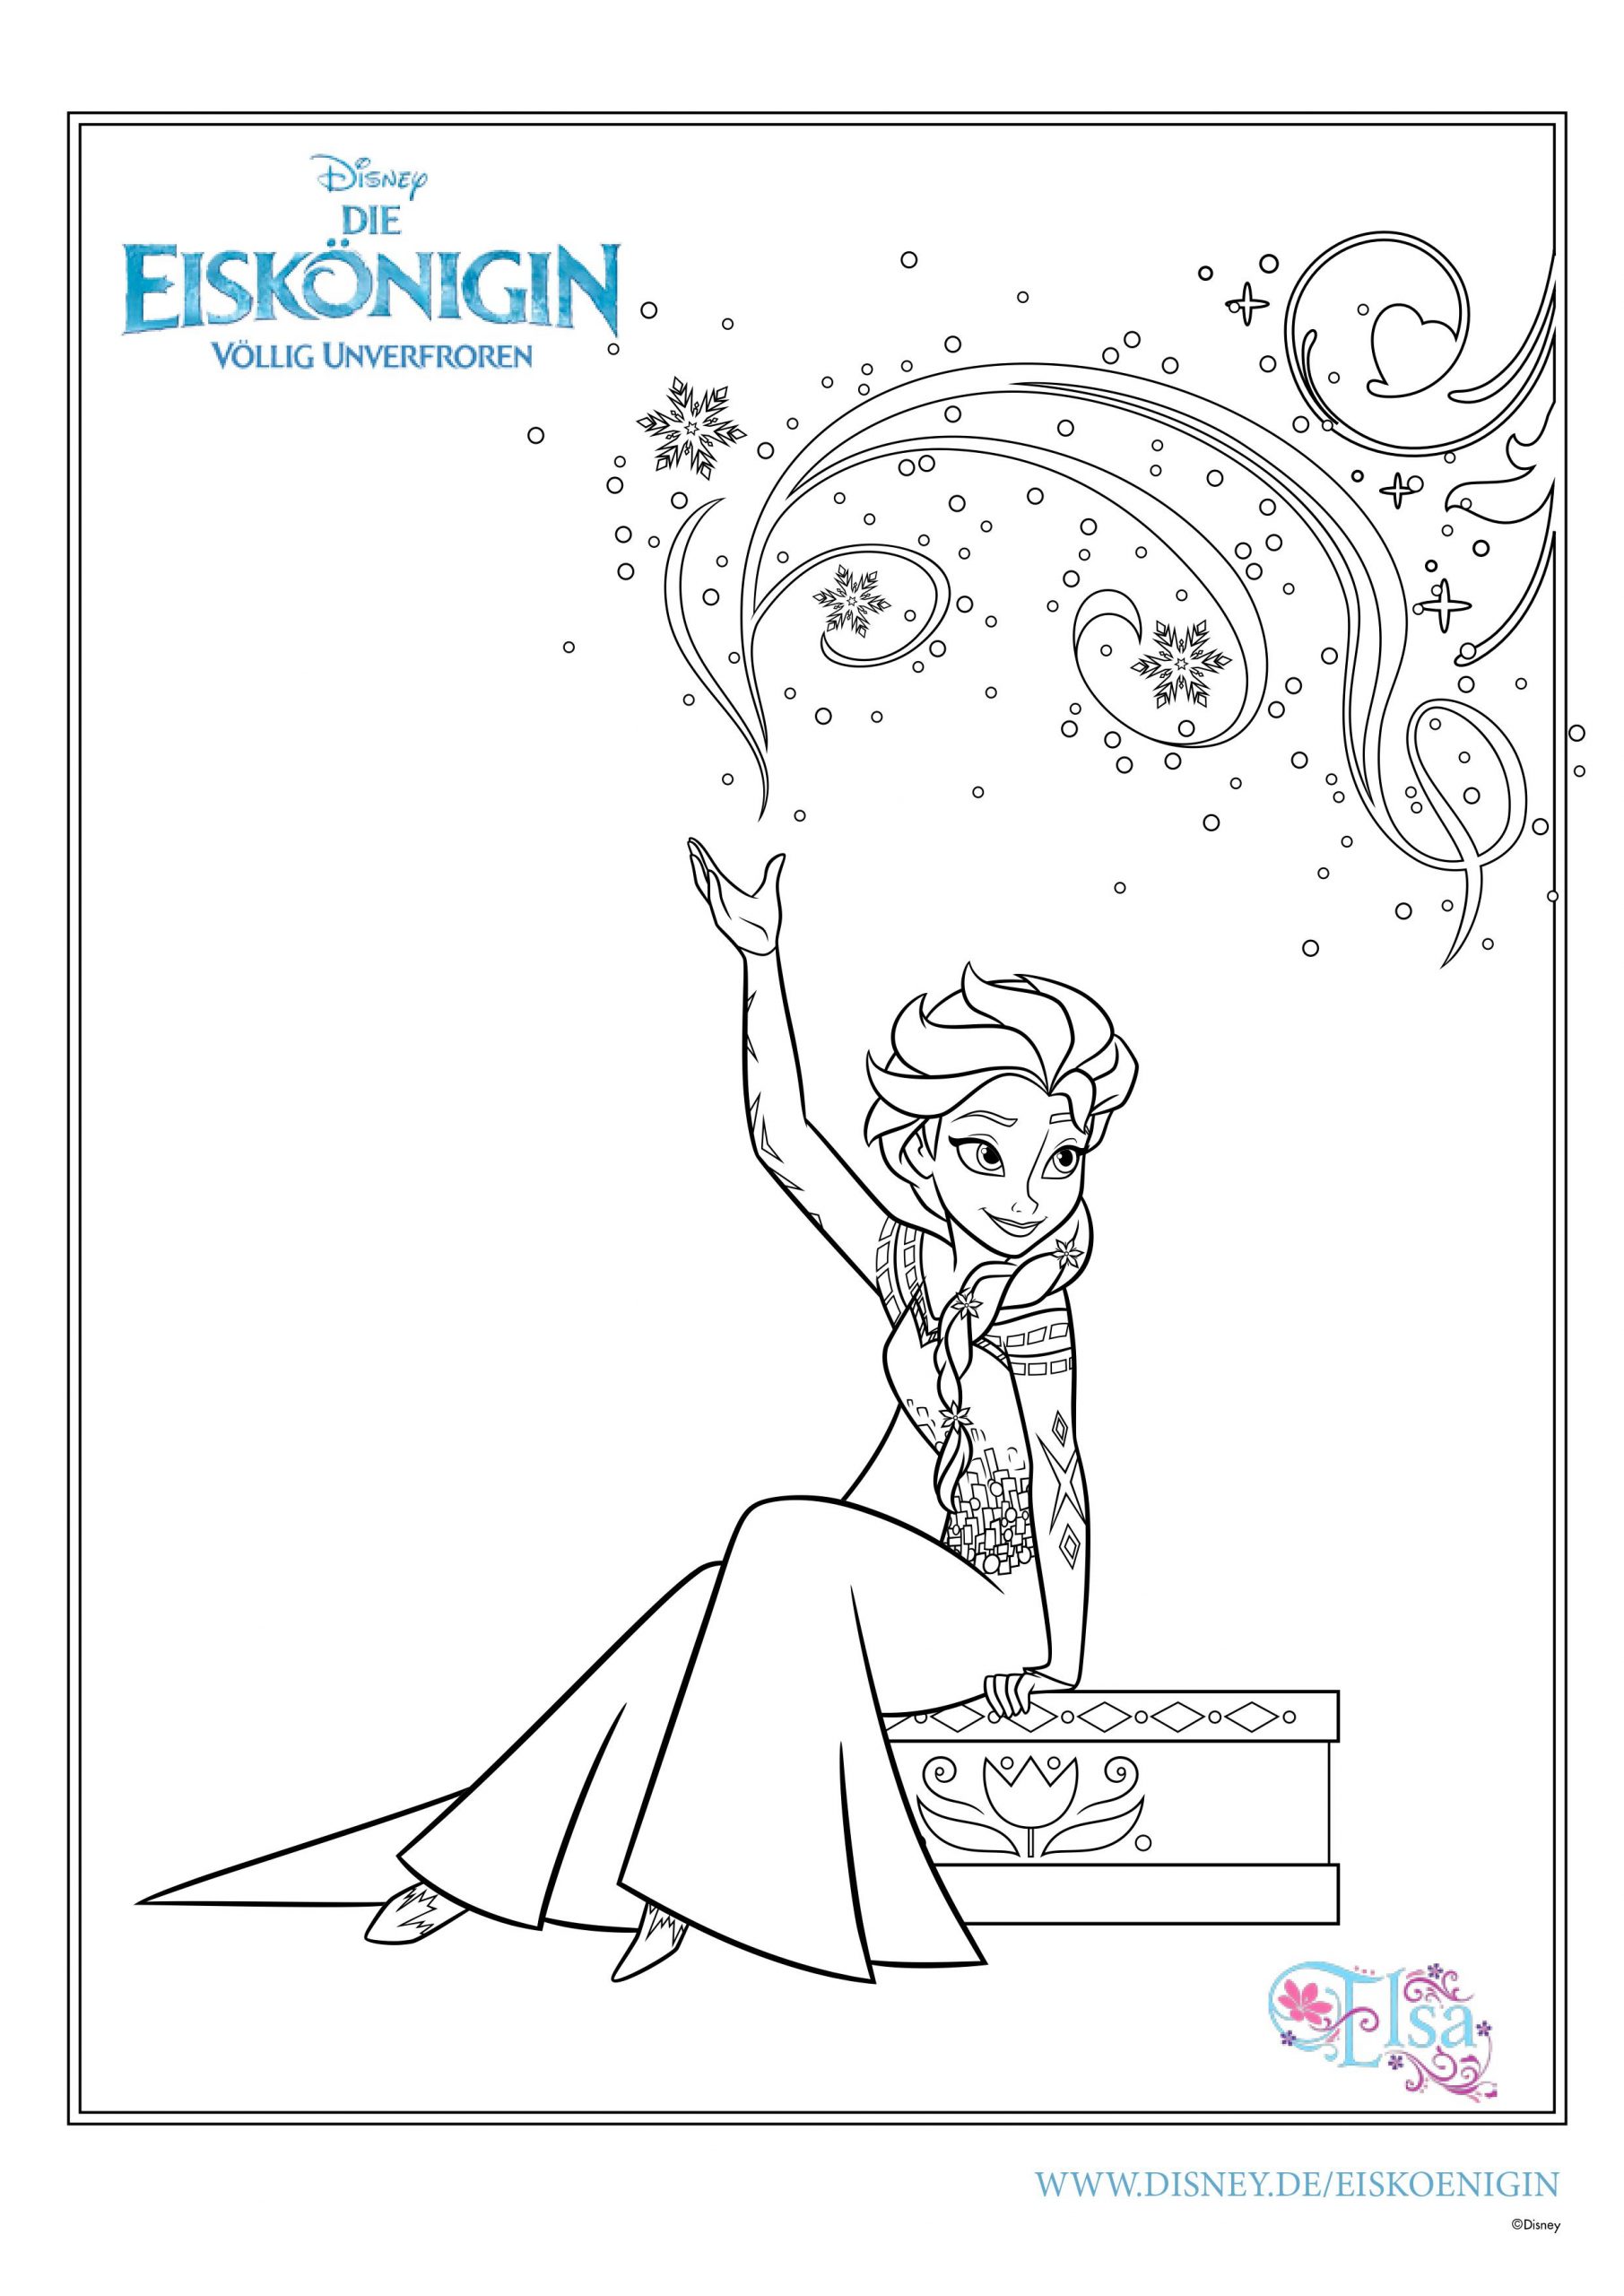 Ausmalbilder Eiskönigin | Mytoys-Blog verwandt mit Gratis Malvorlagen Disney